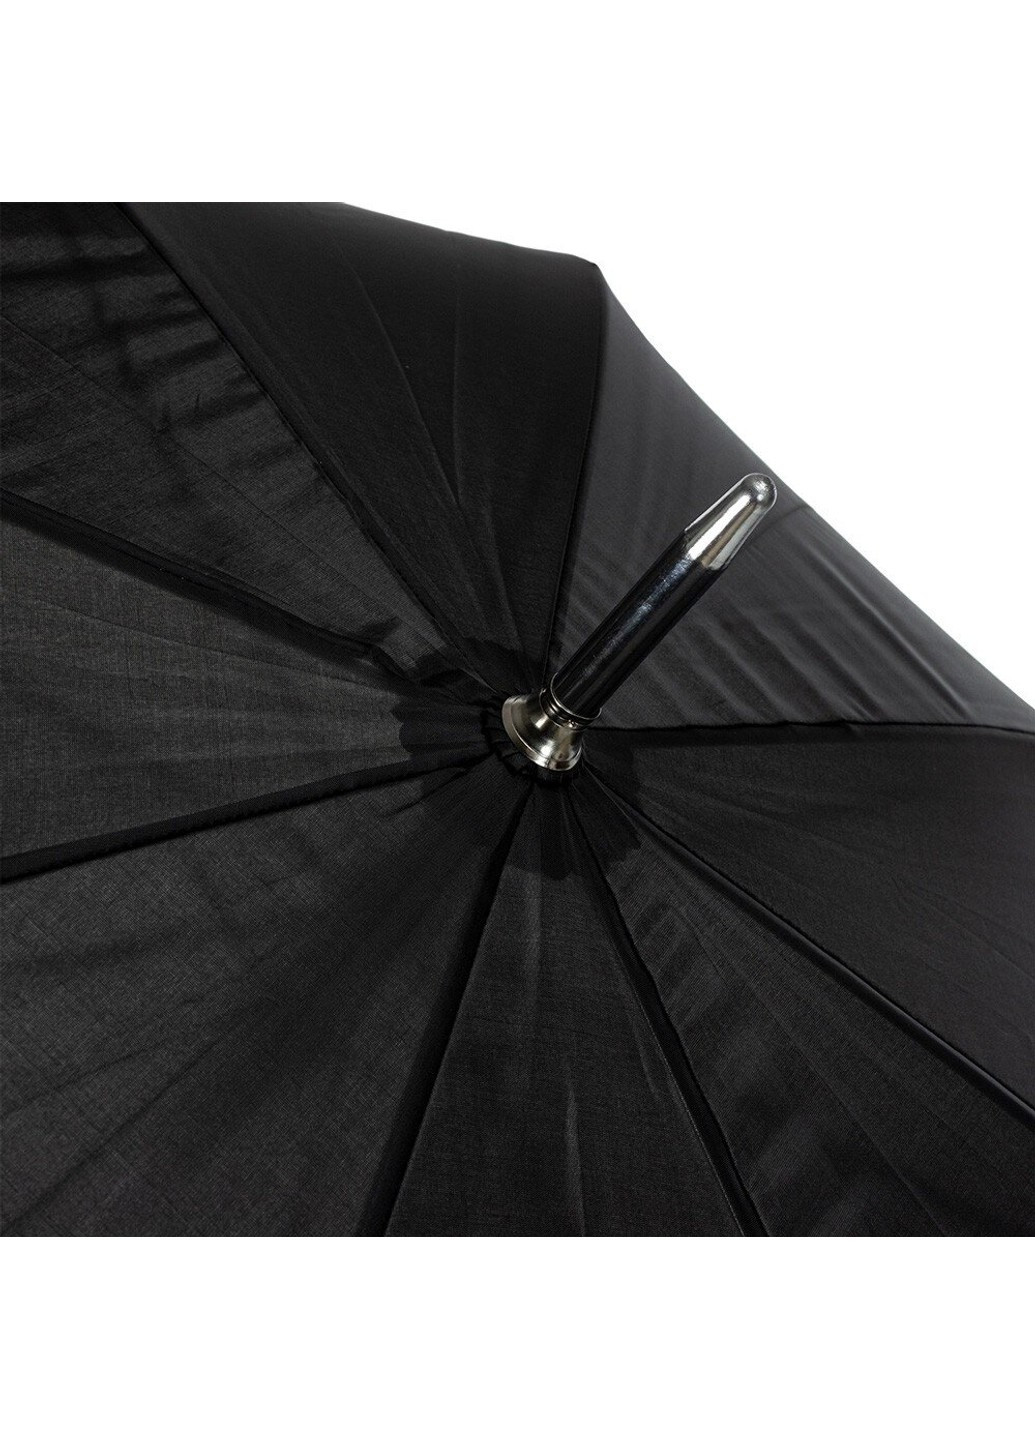 Зонт-трость мужской полуавтомат FULS826-black Incognito (263135620)